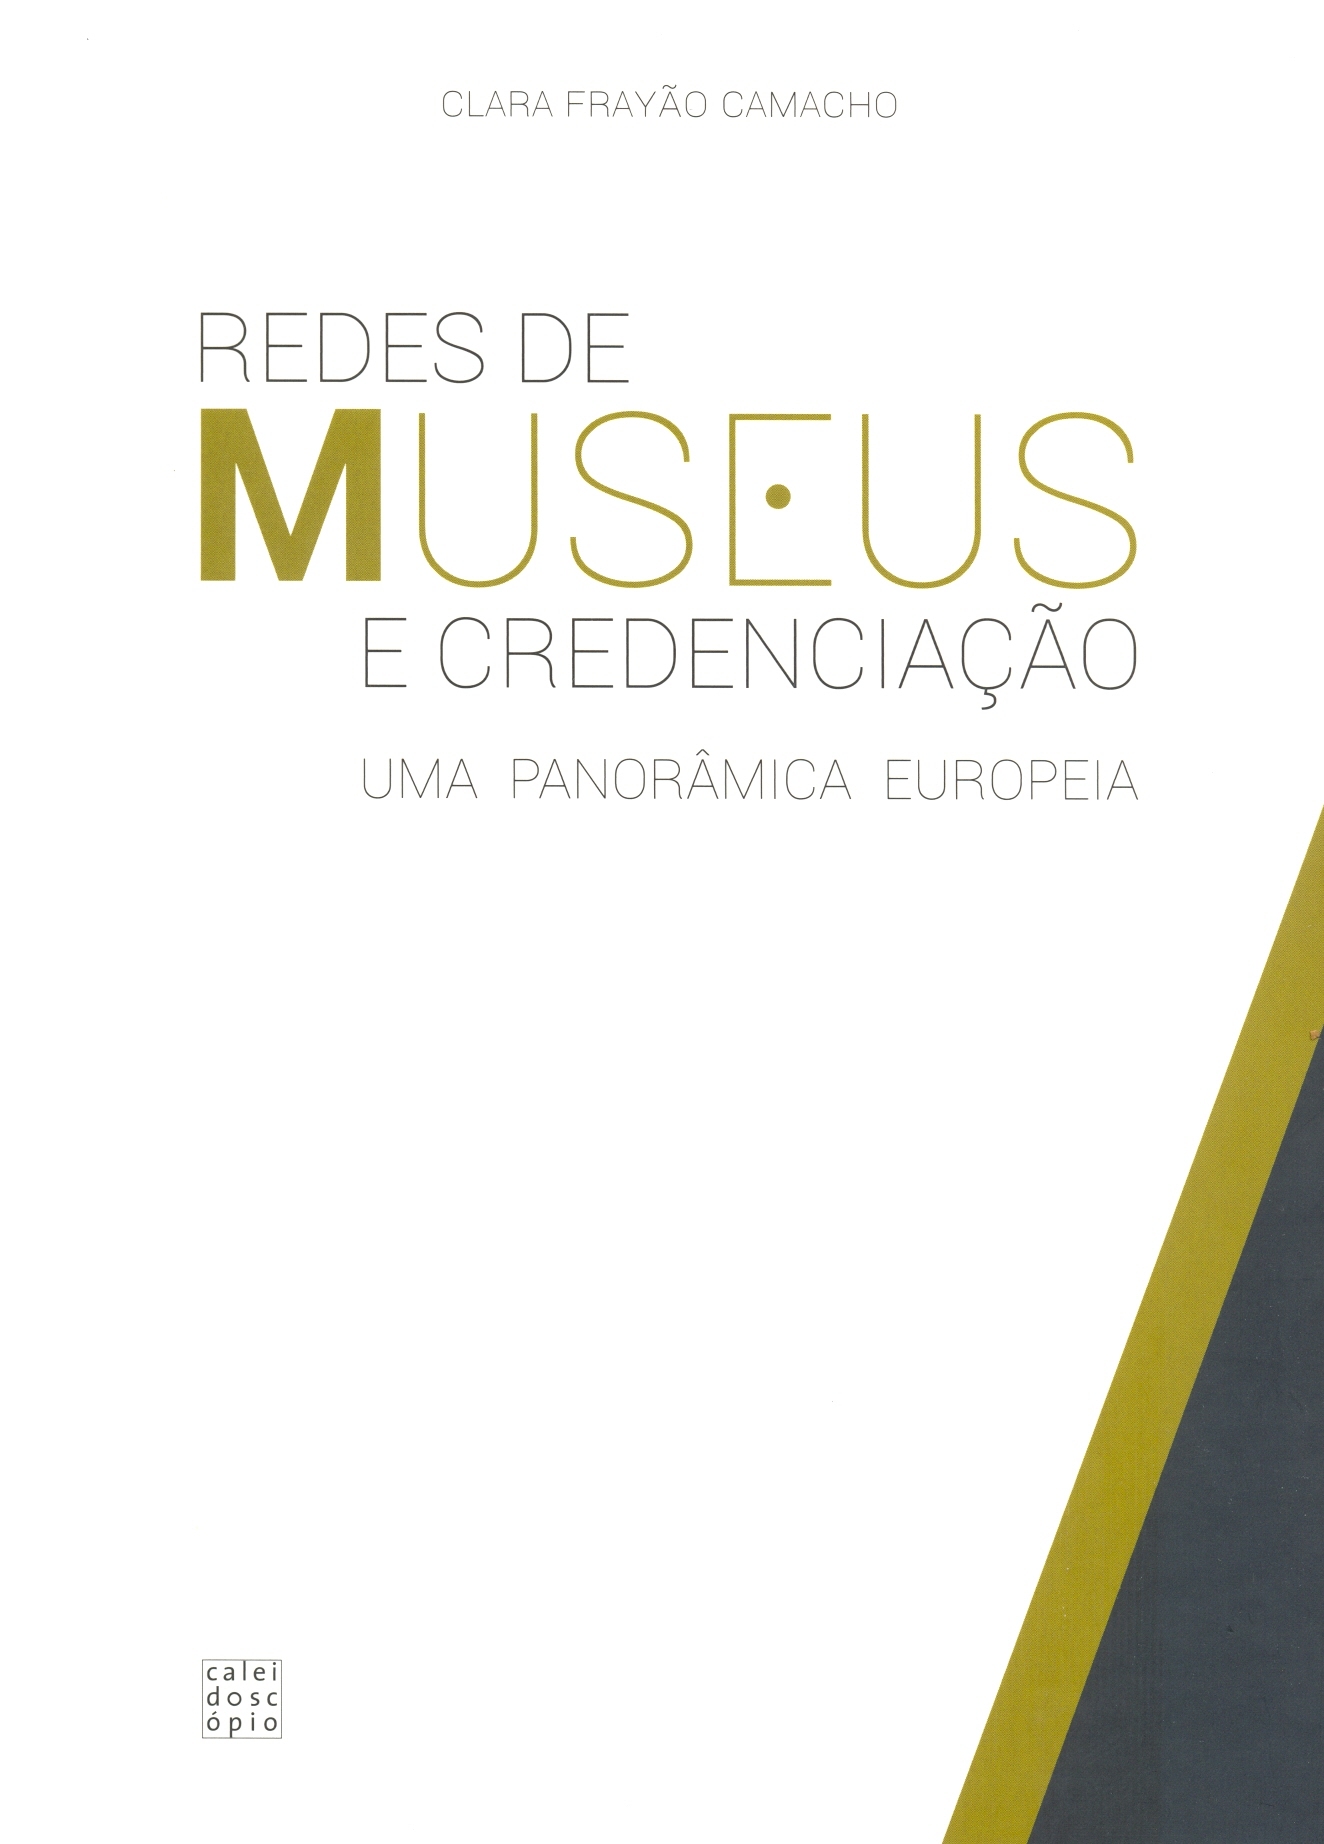 Clara Frayão Camacho – Redes de Museus e Credenciação. Uma Panorâmica Europeia